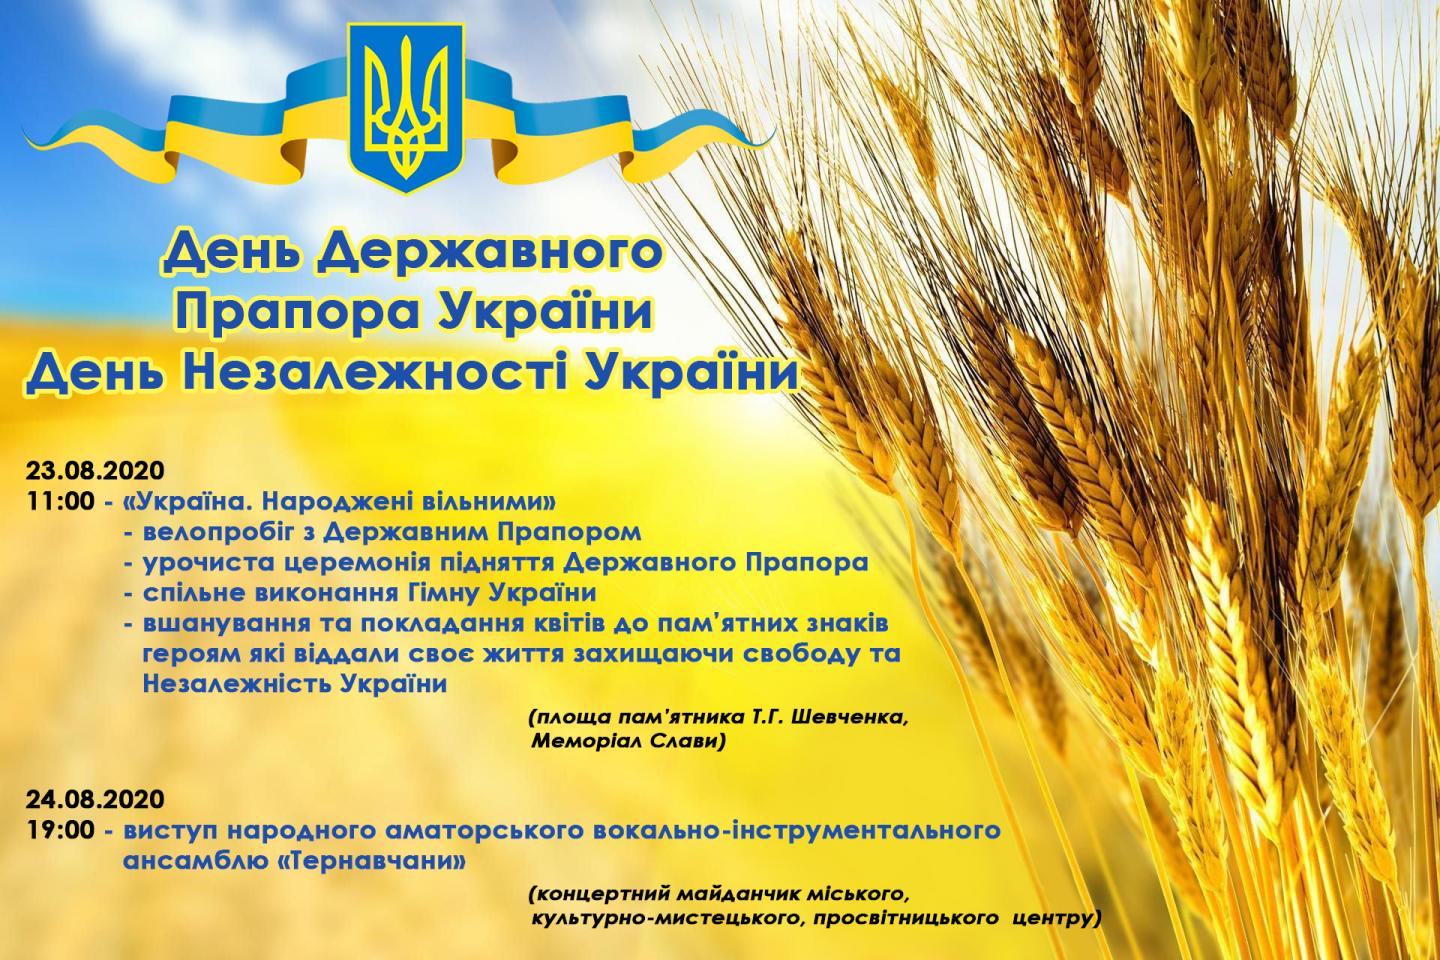 http://dunrada.gov.ua/uploadfile/archive_news/2020/08/20/2020-08-20_1861/images/images-69436.jpg